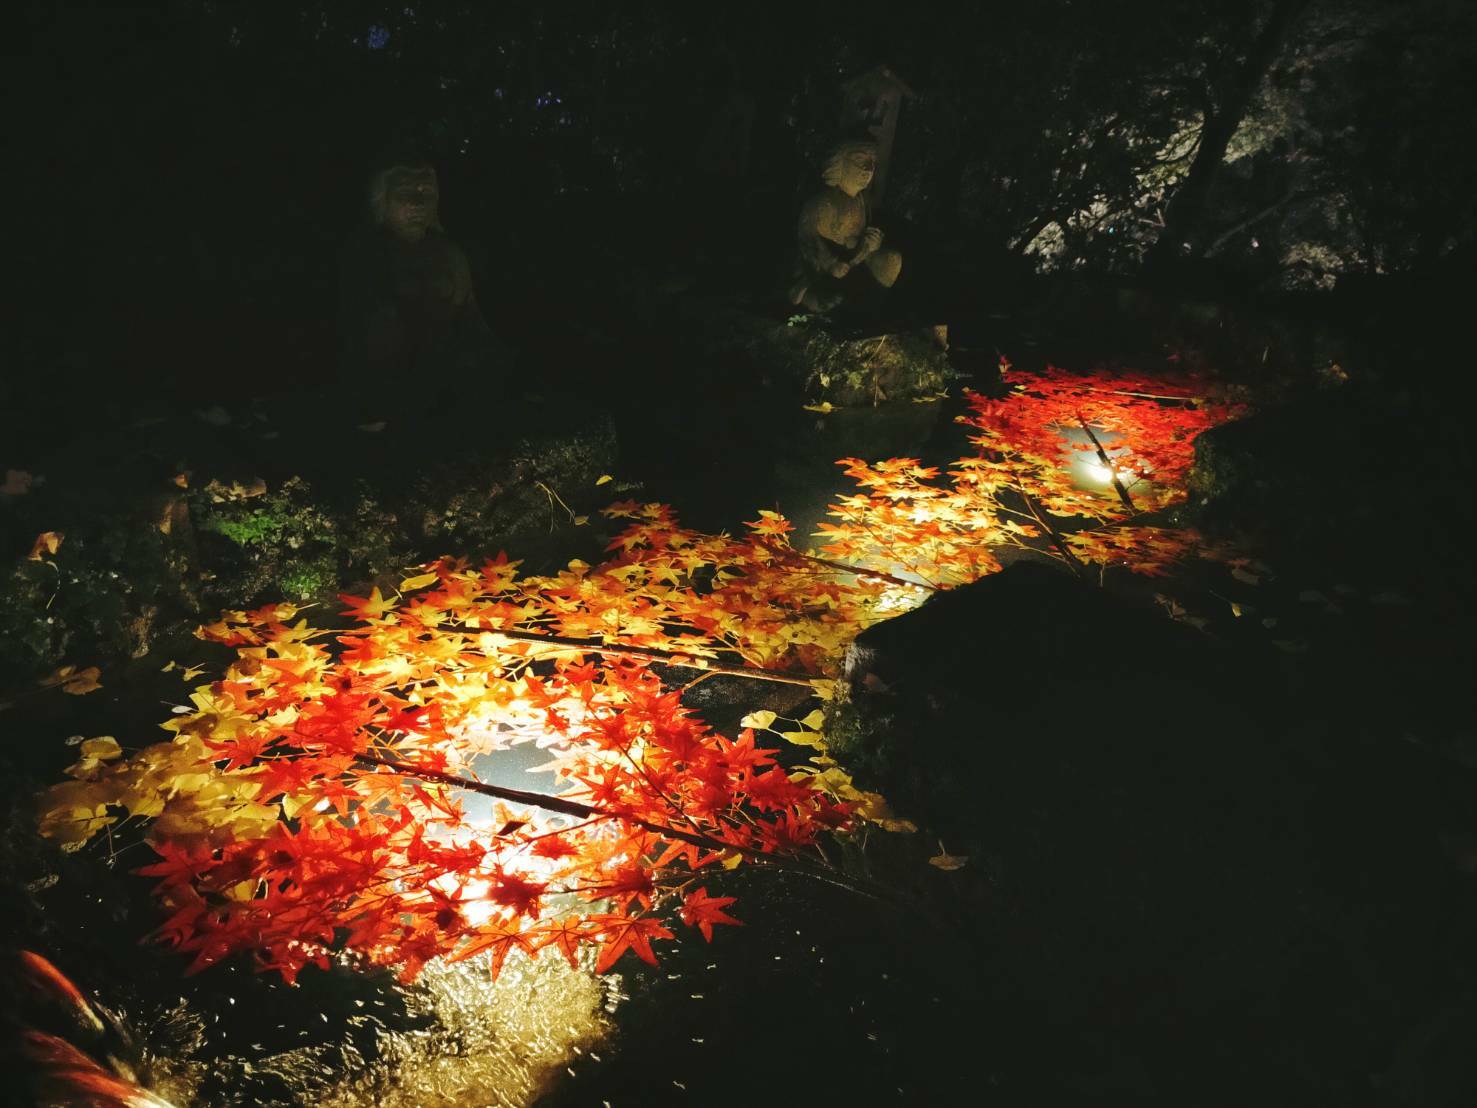 「卍」の形をした「卍池」。池に落ちた葉と光のコントラストがとても美しく、吸い込まれてしまいそうです。